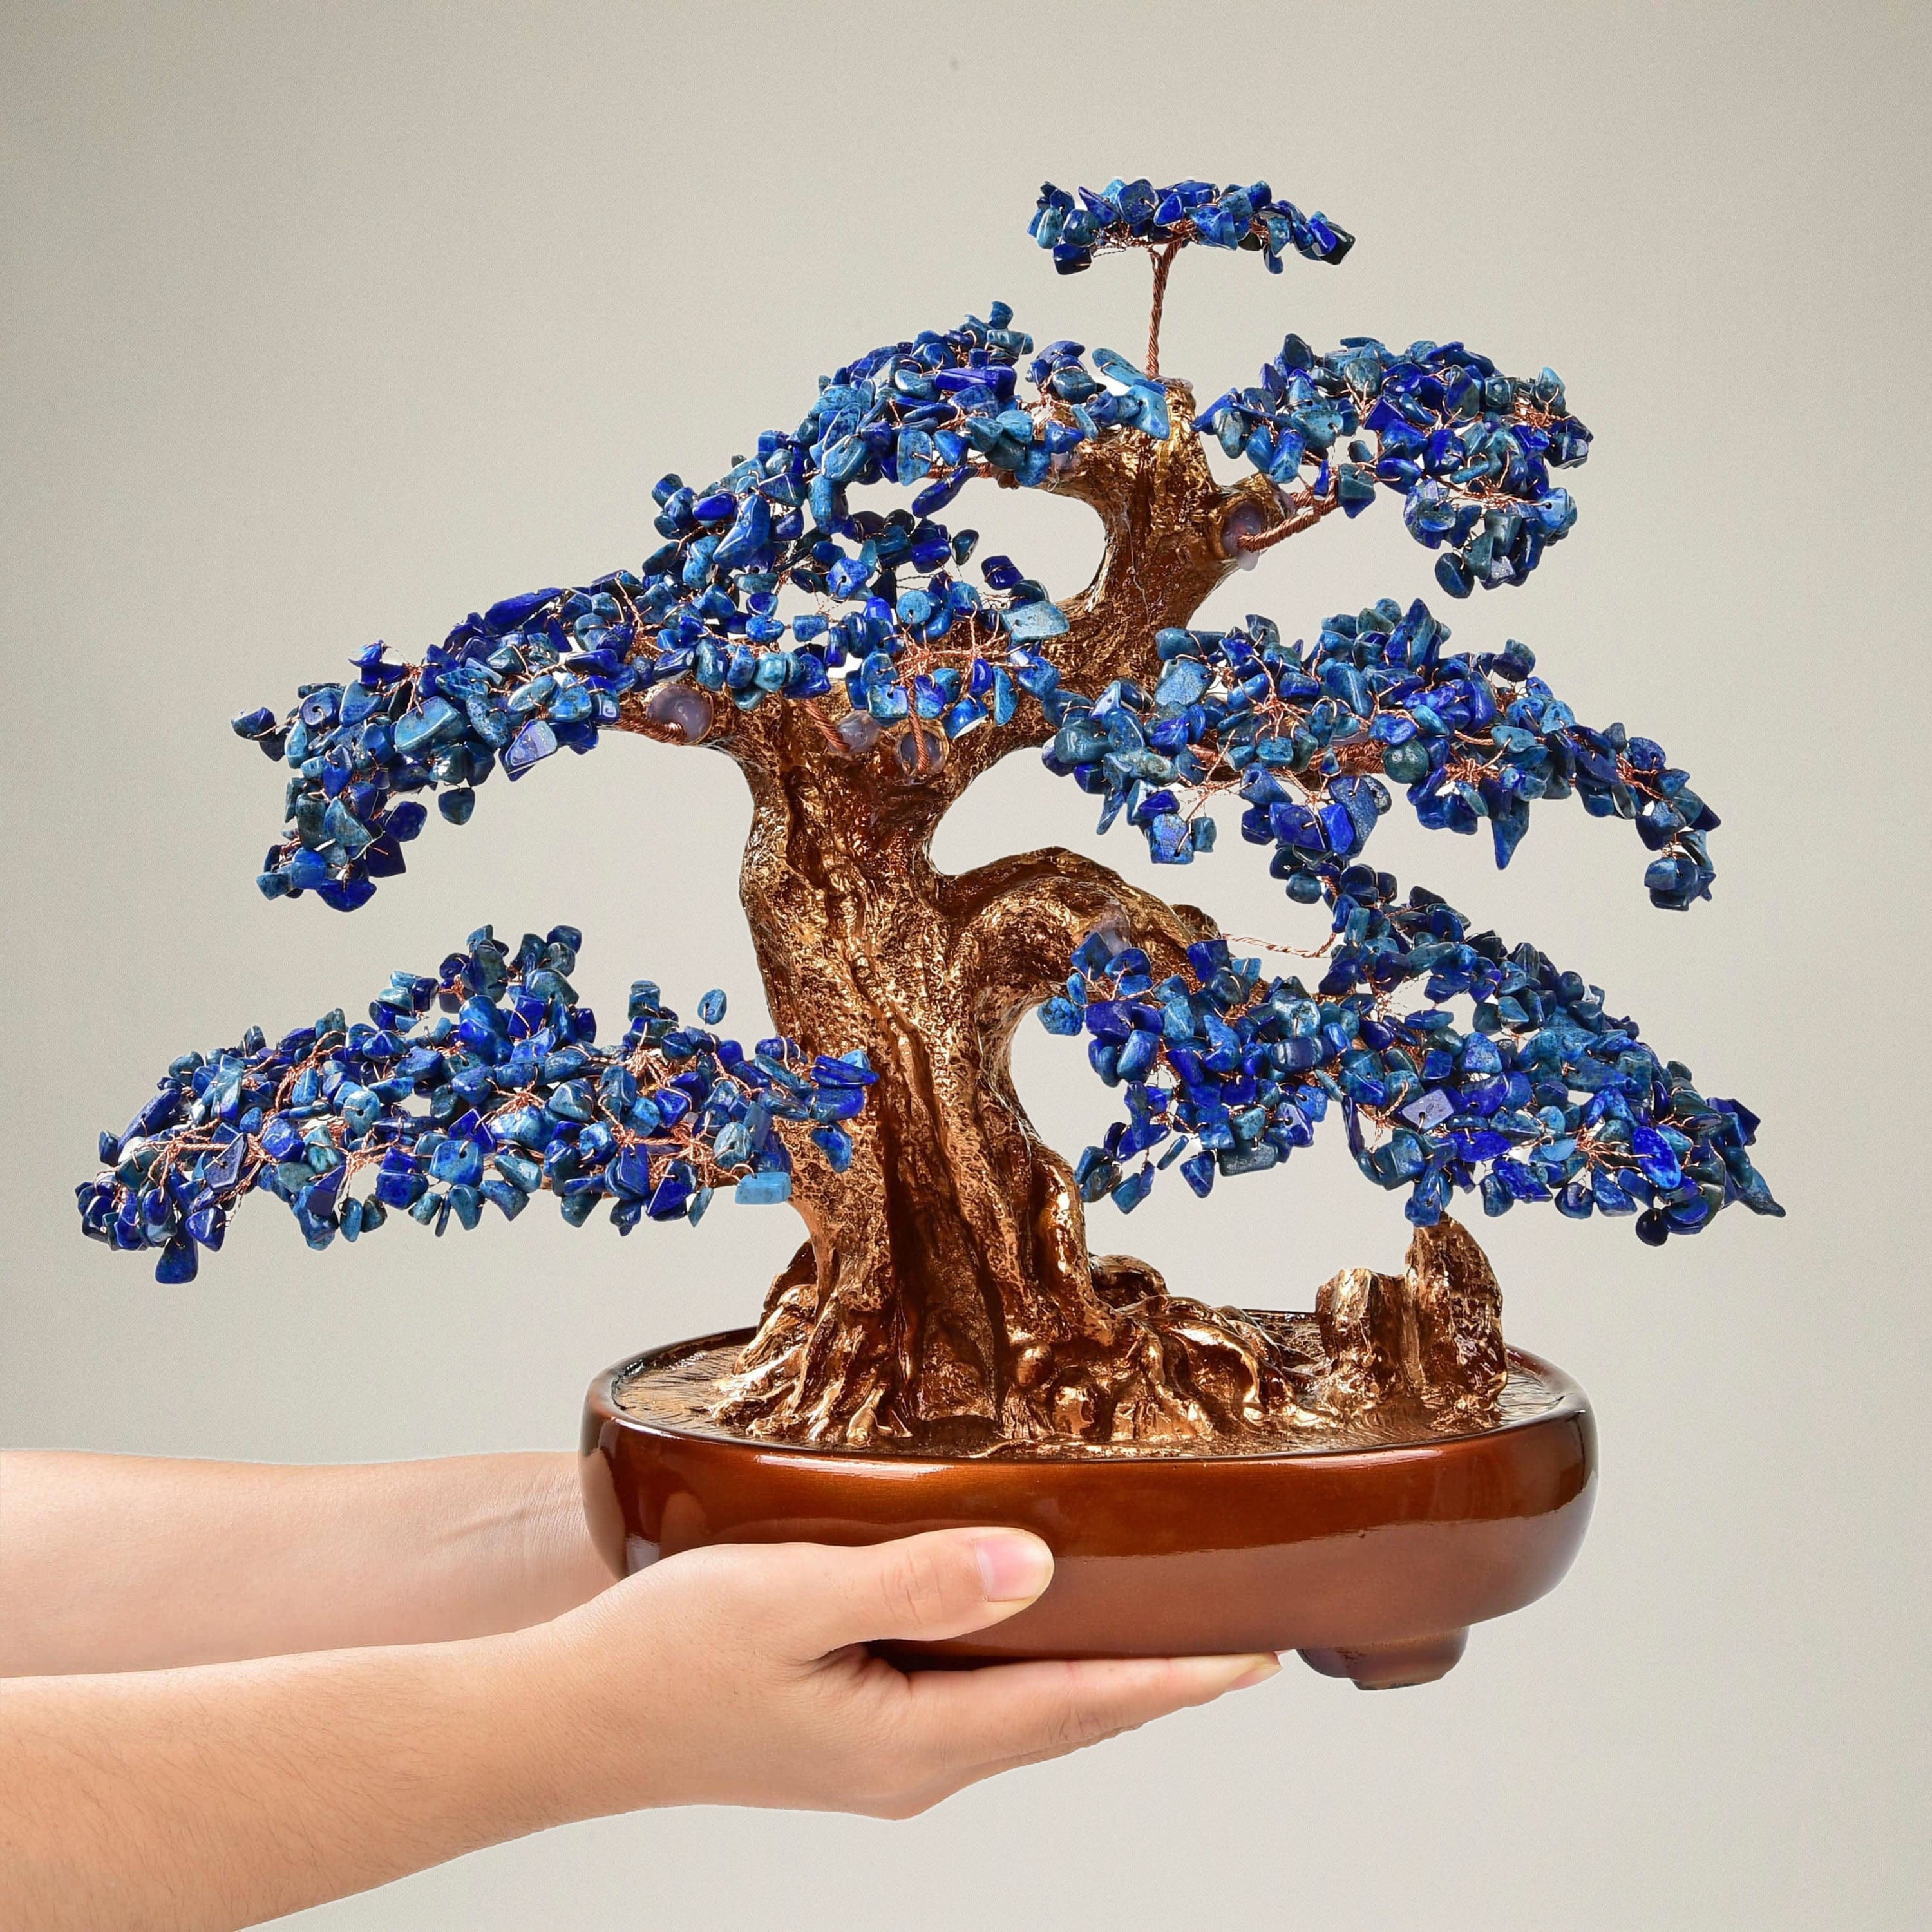 Kalifano Gemstone Trees Lapis Bonsai Tree of Life with 1,251 Natural Gemstones K9150N-LP